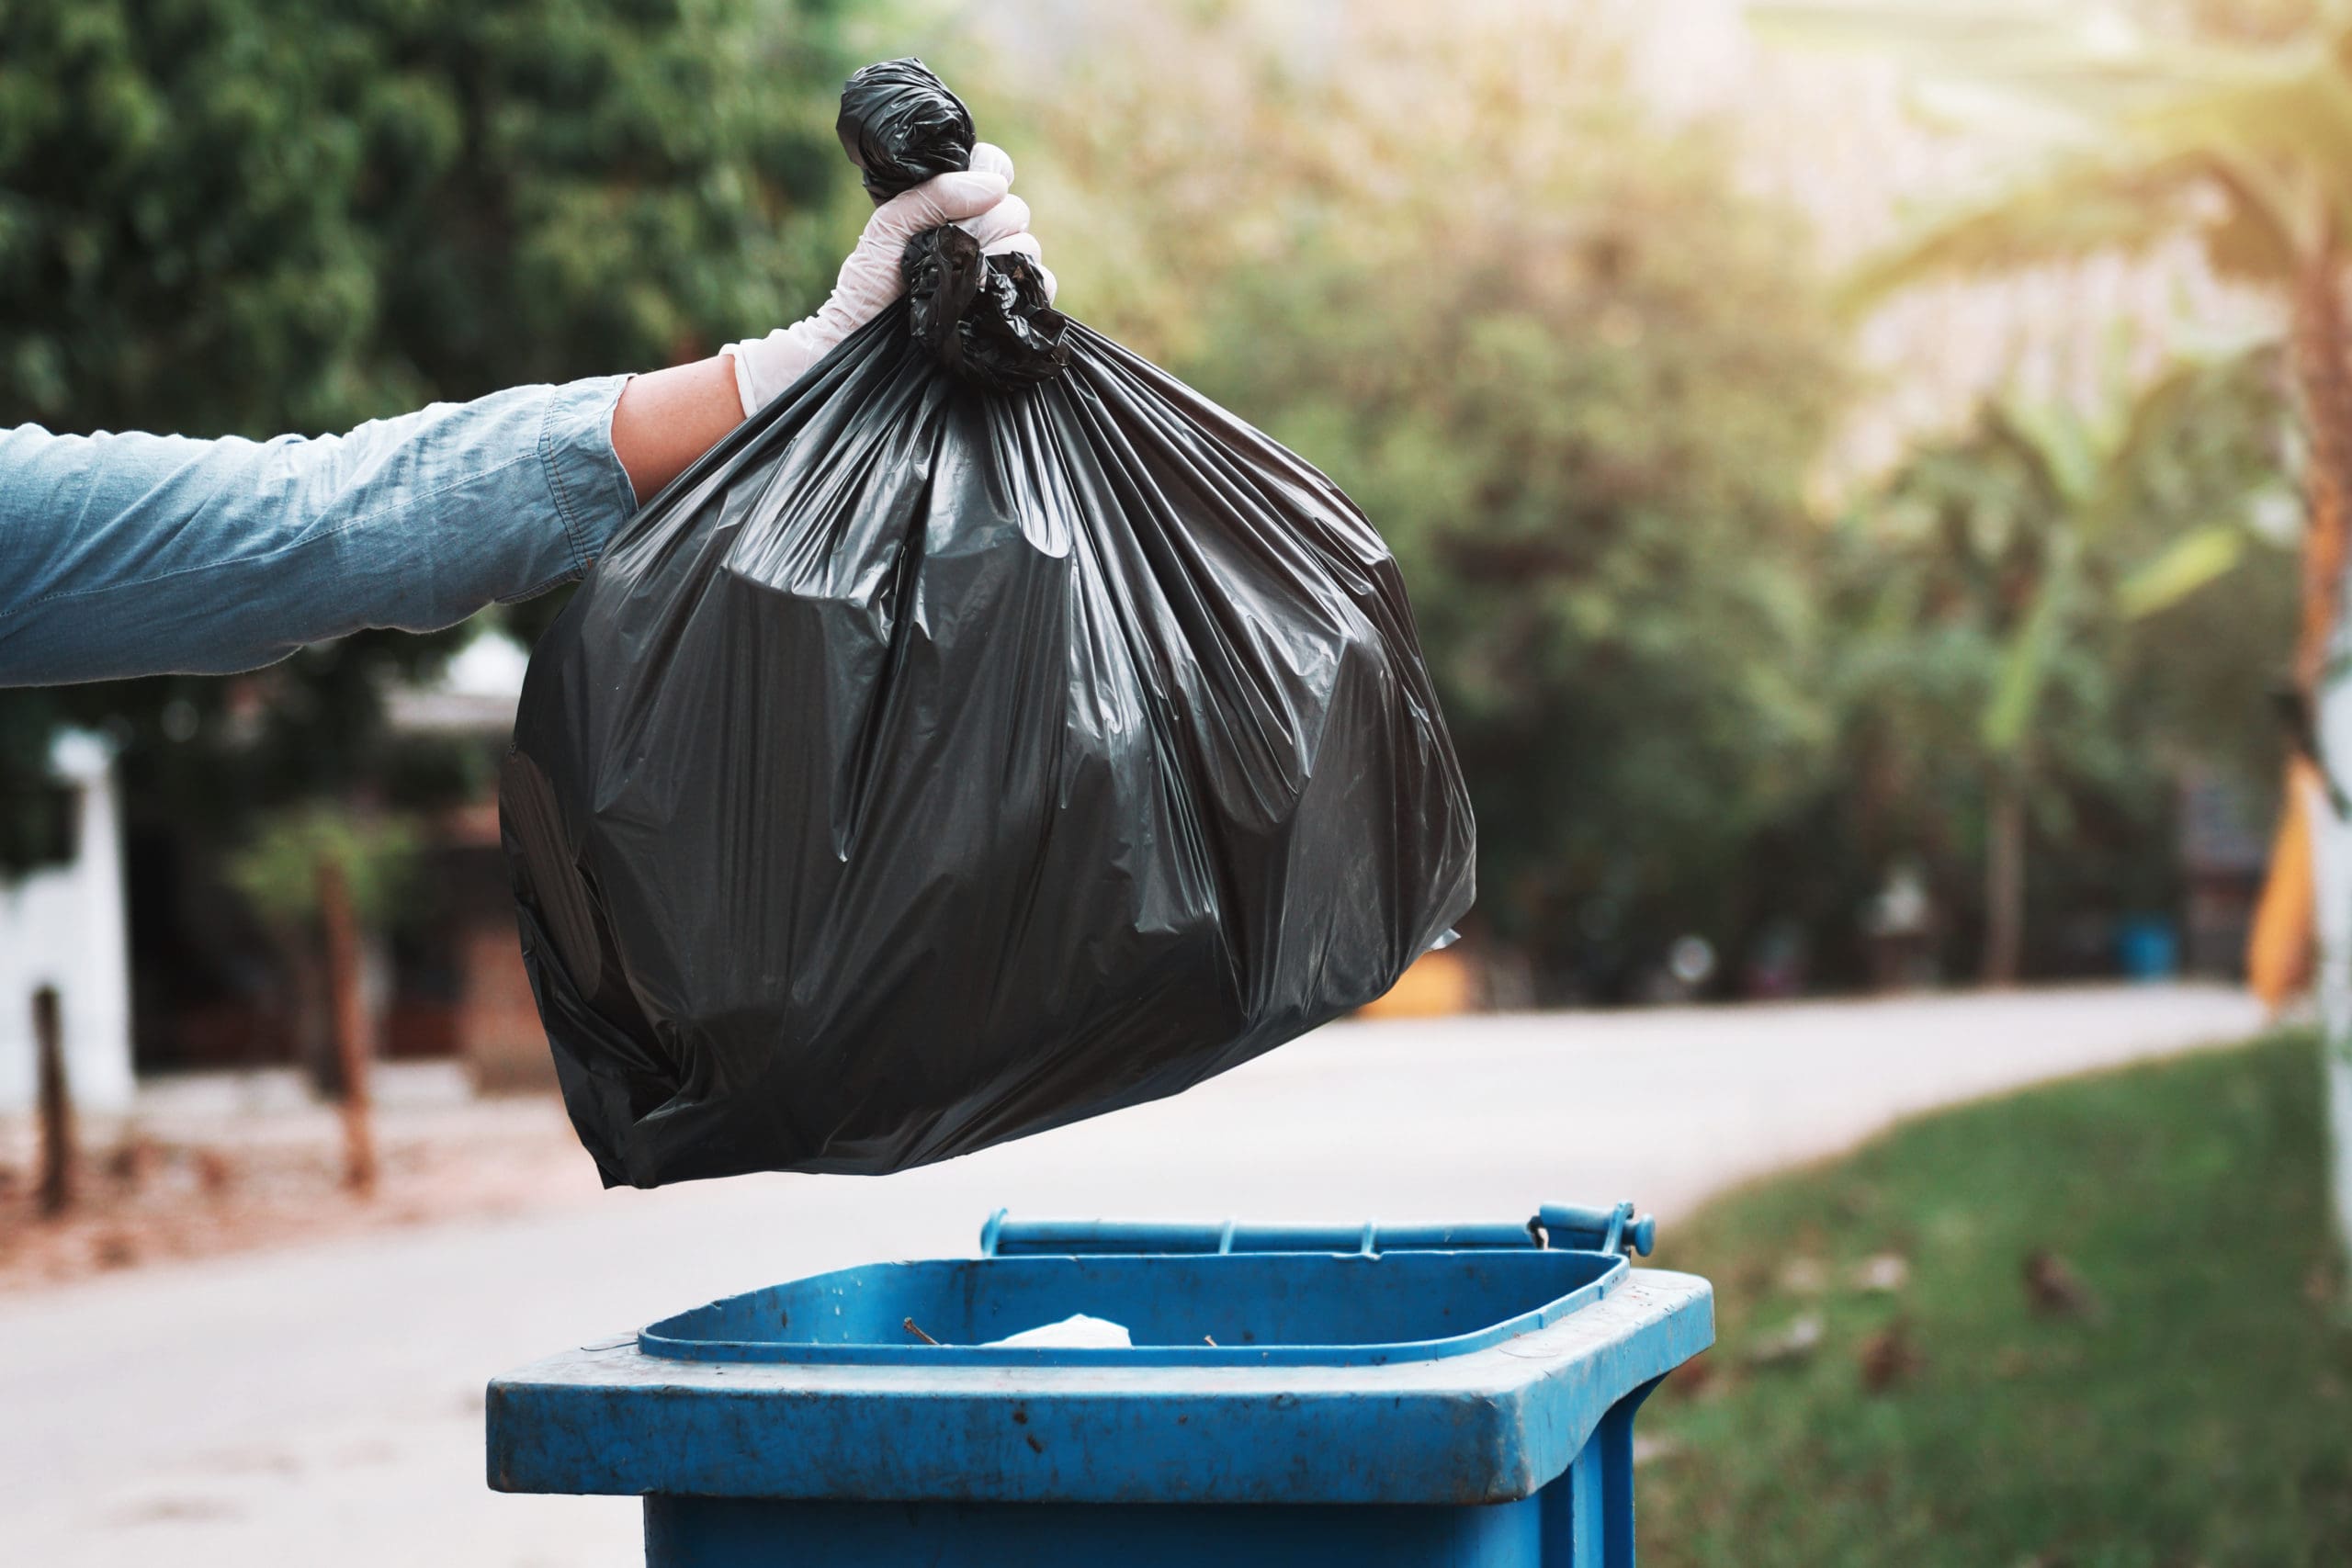 gloved hand holding black trash bag over a garbage bin for waste management collection